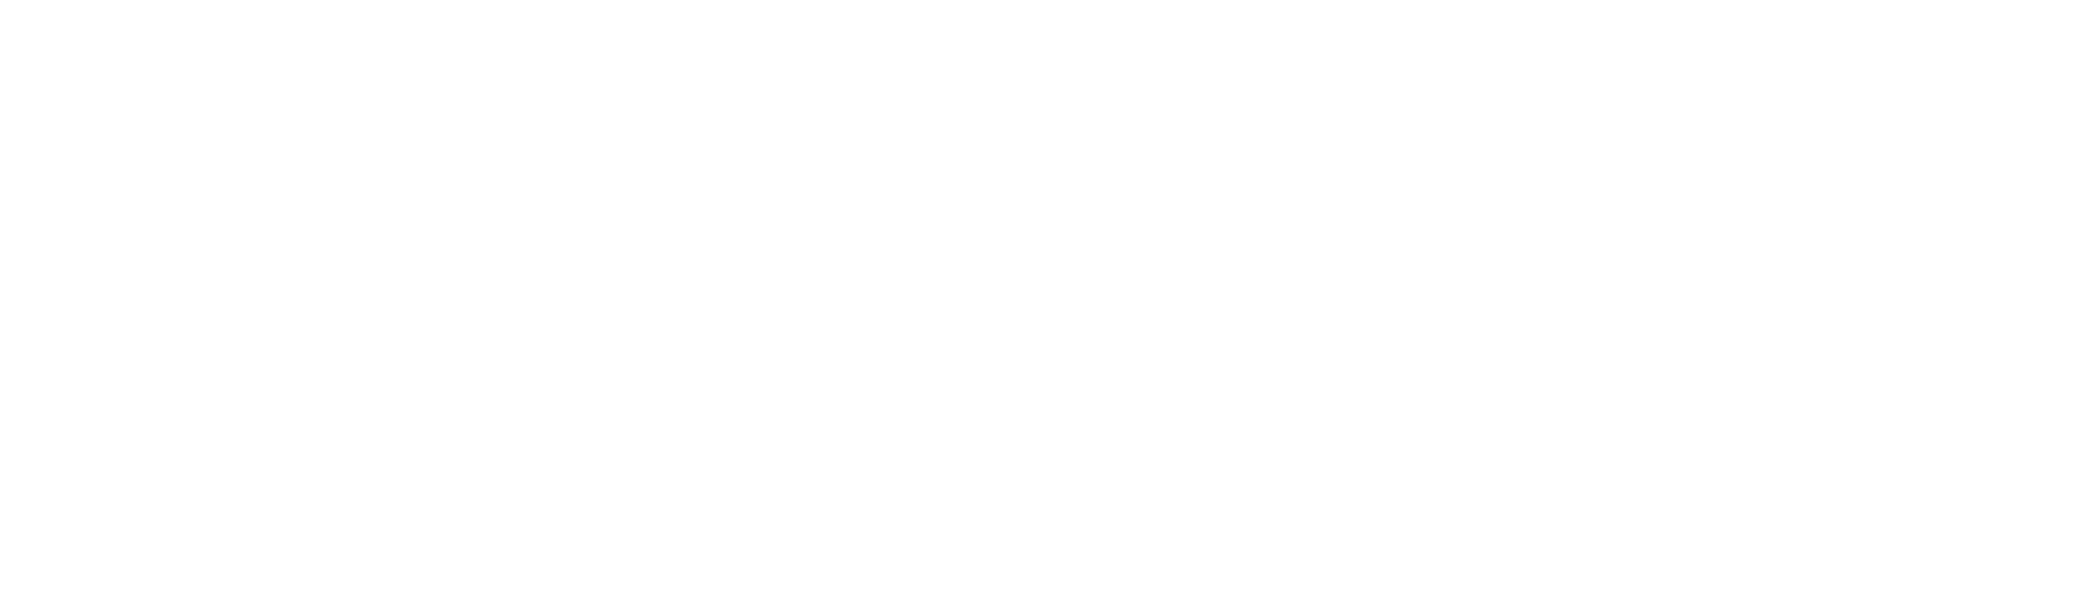 troy_rgb_white_logo